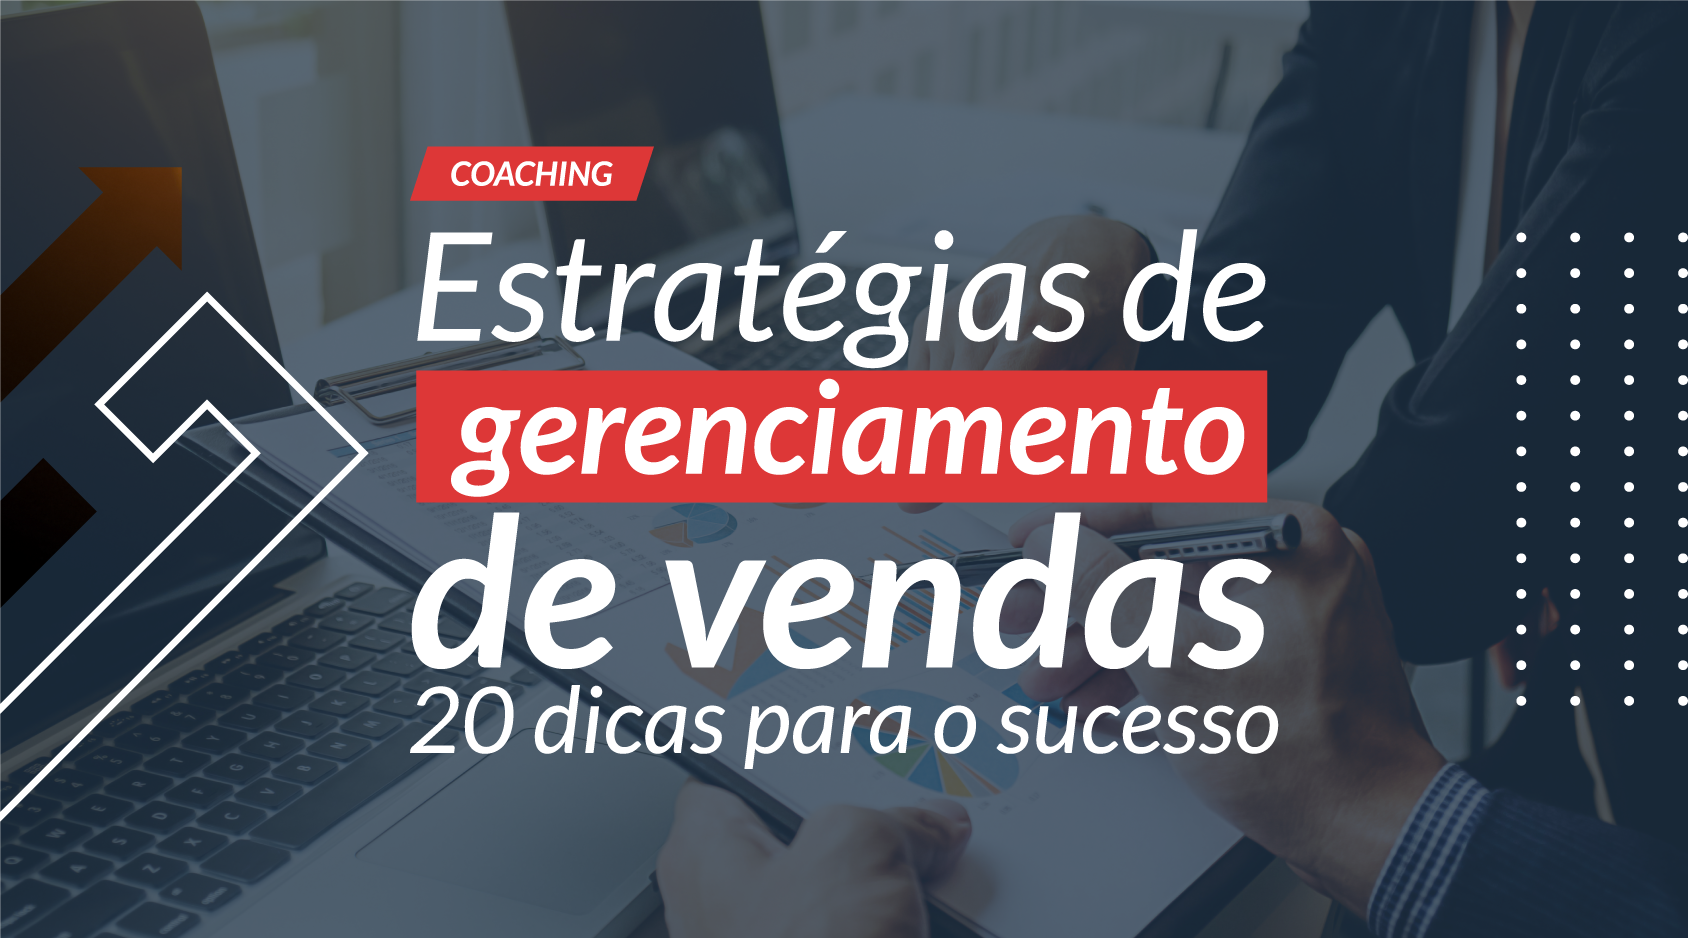  Estratégias de gerenciamento de vendas: 20 dicas para o sucesso